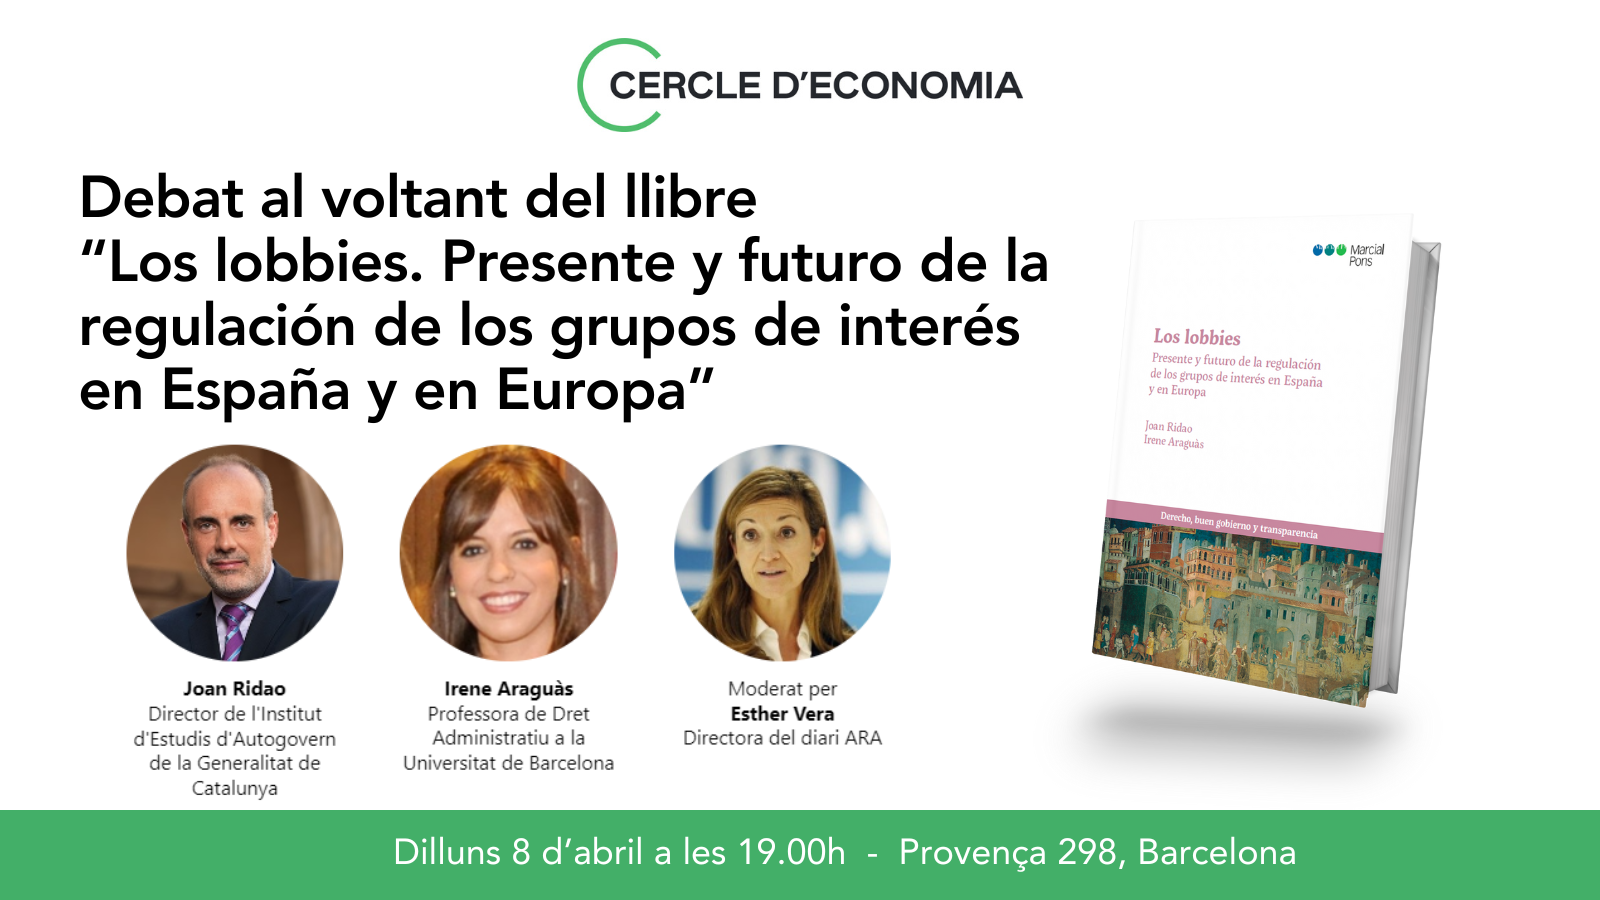 Debat al voltant del llibre "Los lobbies. Presente y futuro de la regulación de los grupos de interés en España y en Europa". 590